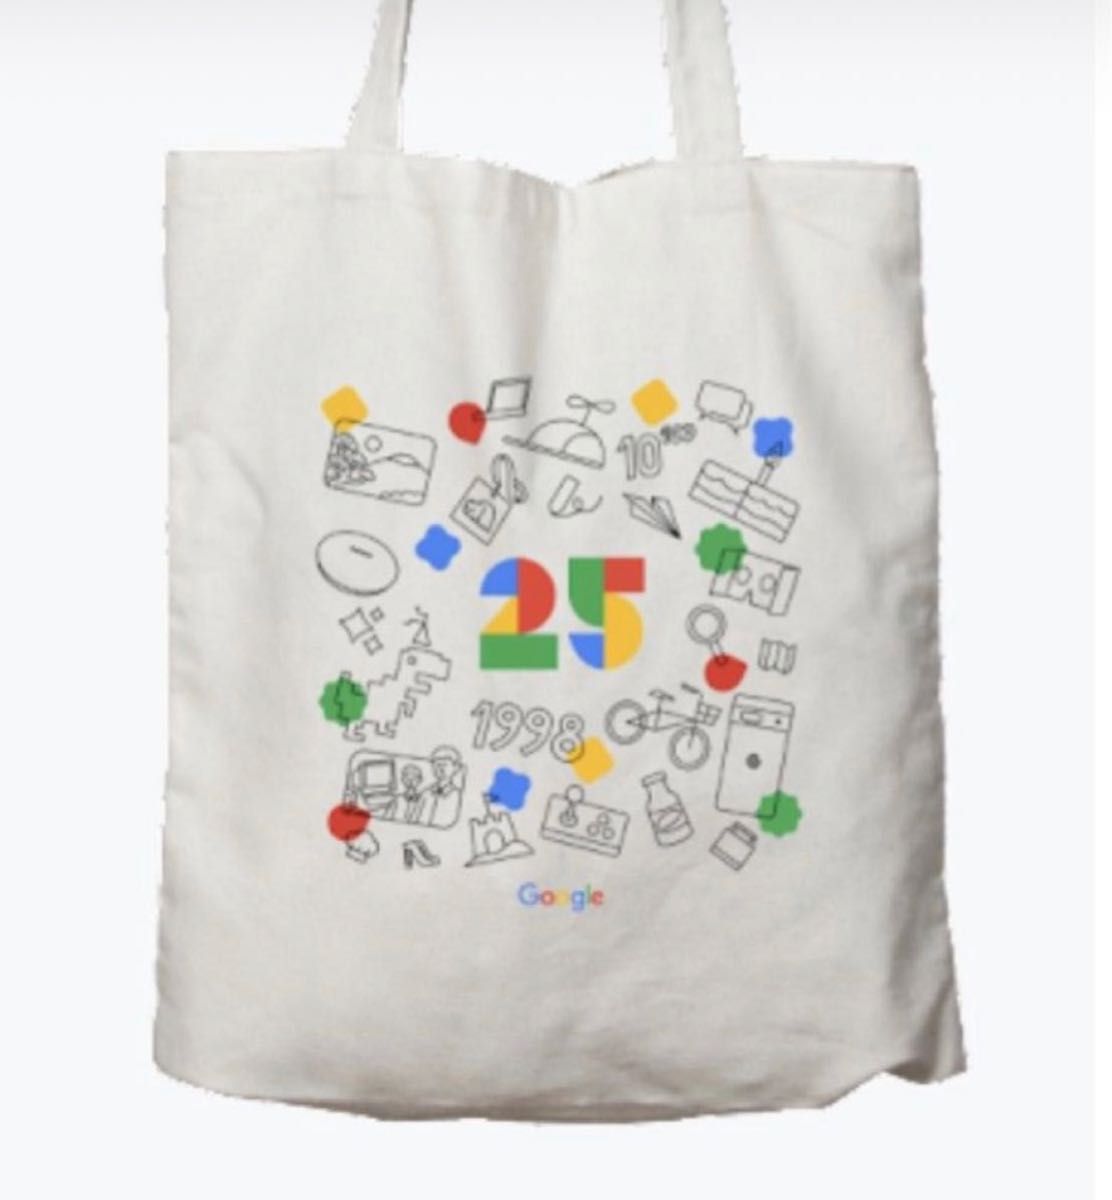 Google 創立 25 周年記念限定 トートバッグ